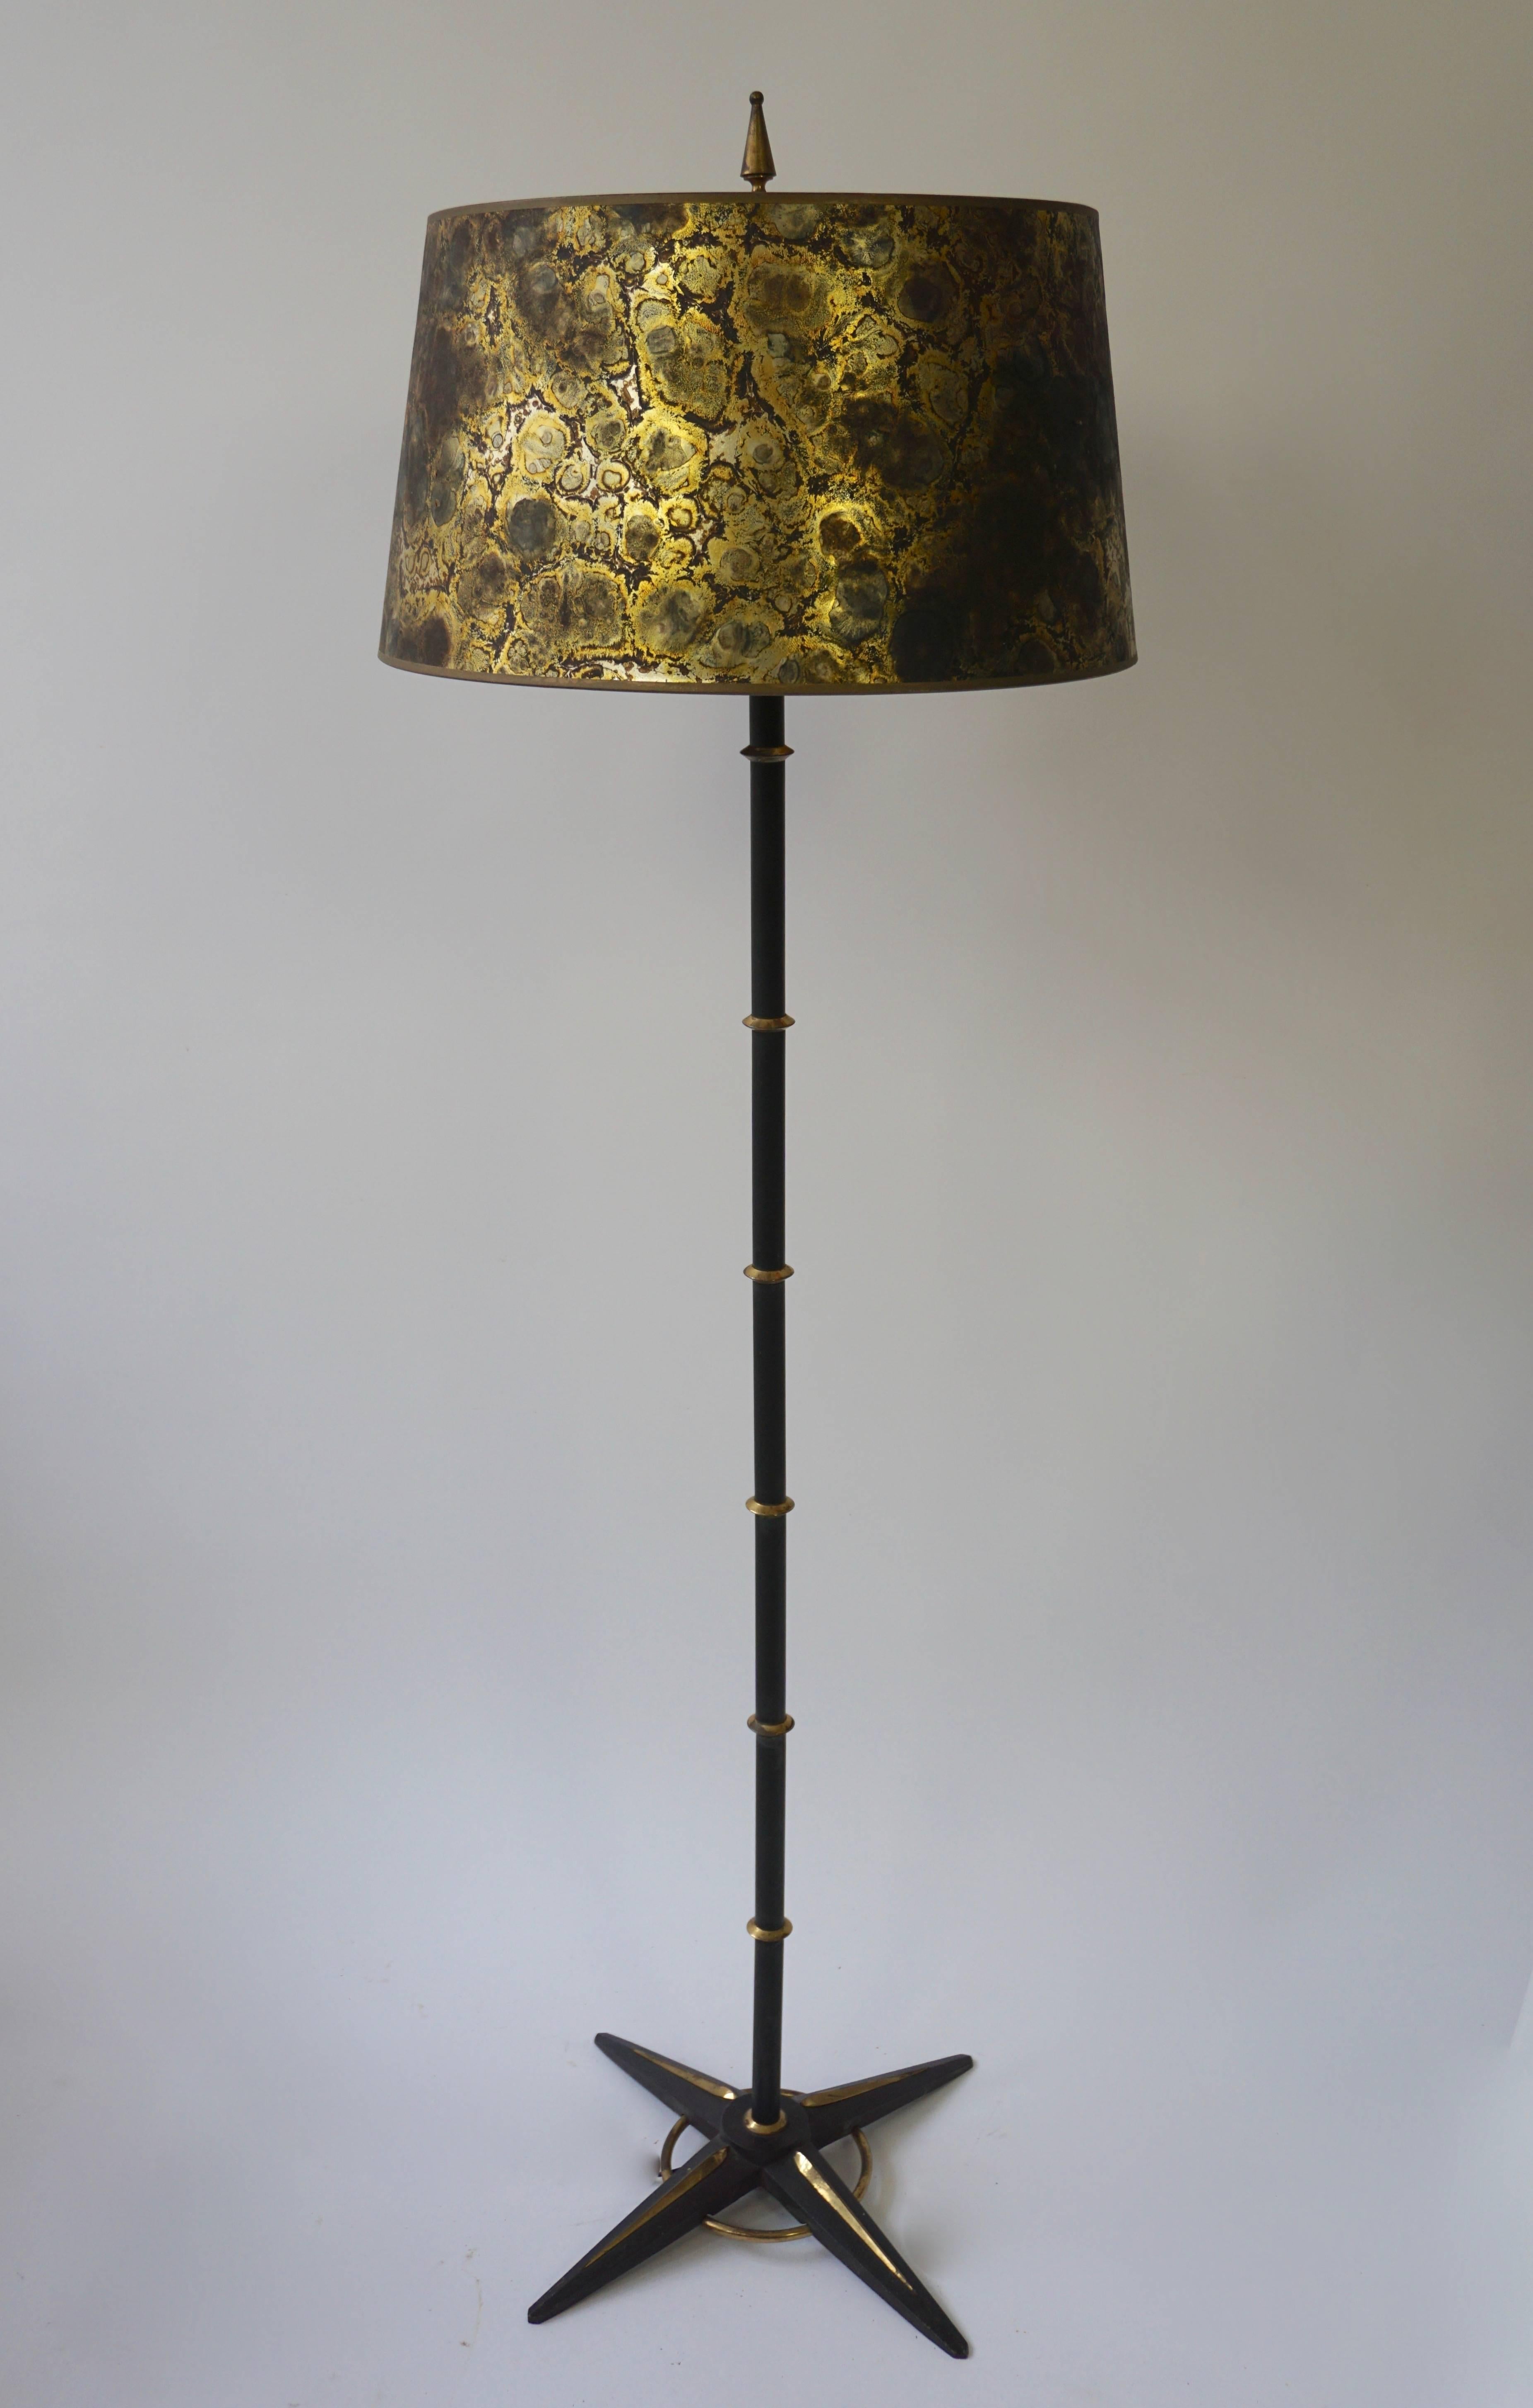 Magnifique lampadaire des années 1950 en métal noir et laiton avec abat-jour doré.
Mesures : Hauteur avec abat-jour 140 cm.
Diamètre de l'abat-jour 43 cm.
Hauteur de l'abat-jour 35 cm.